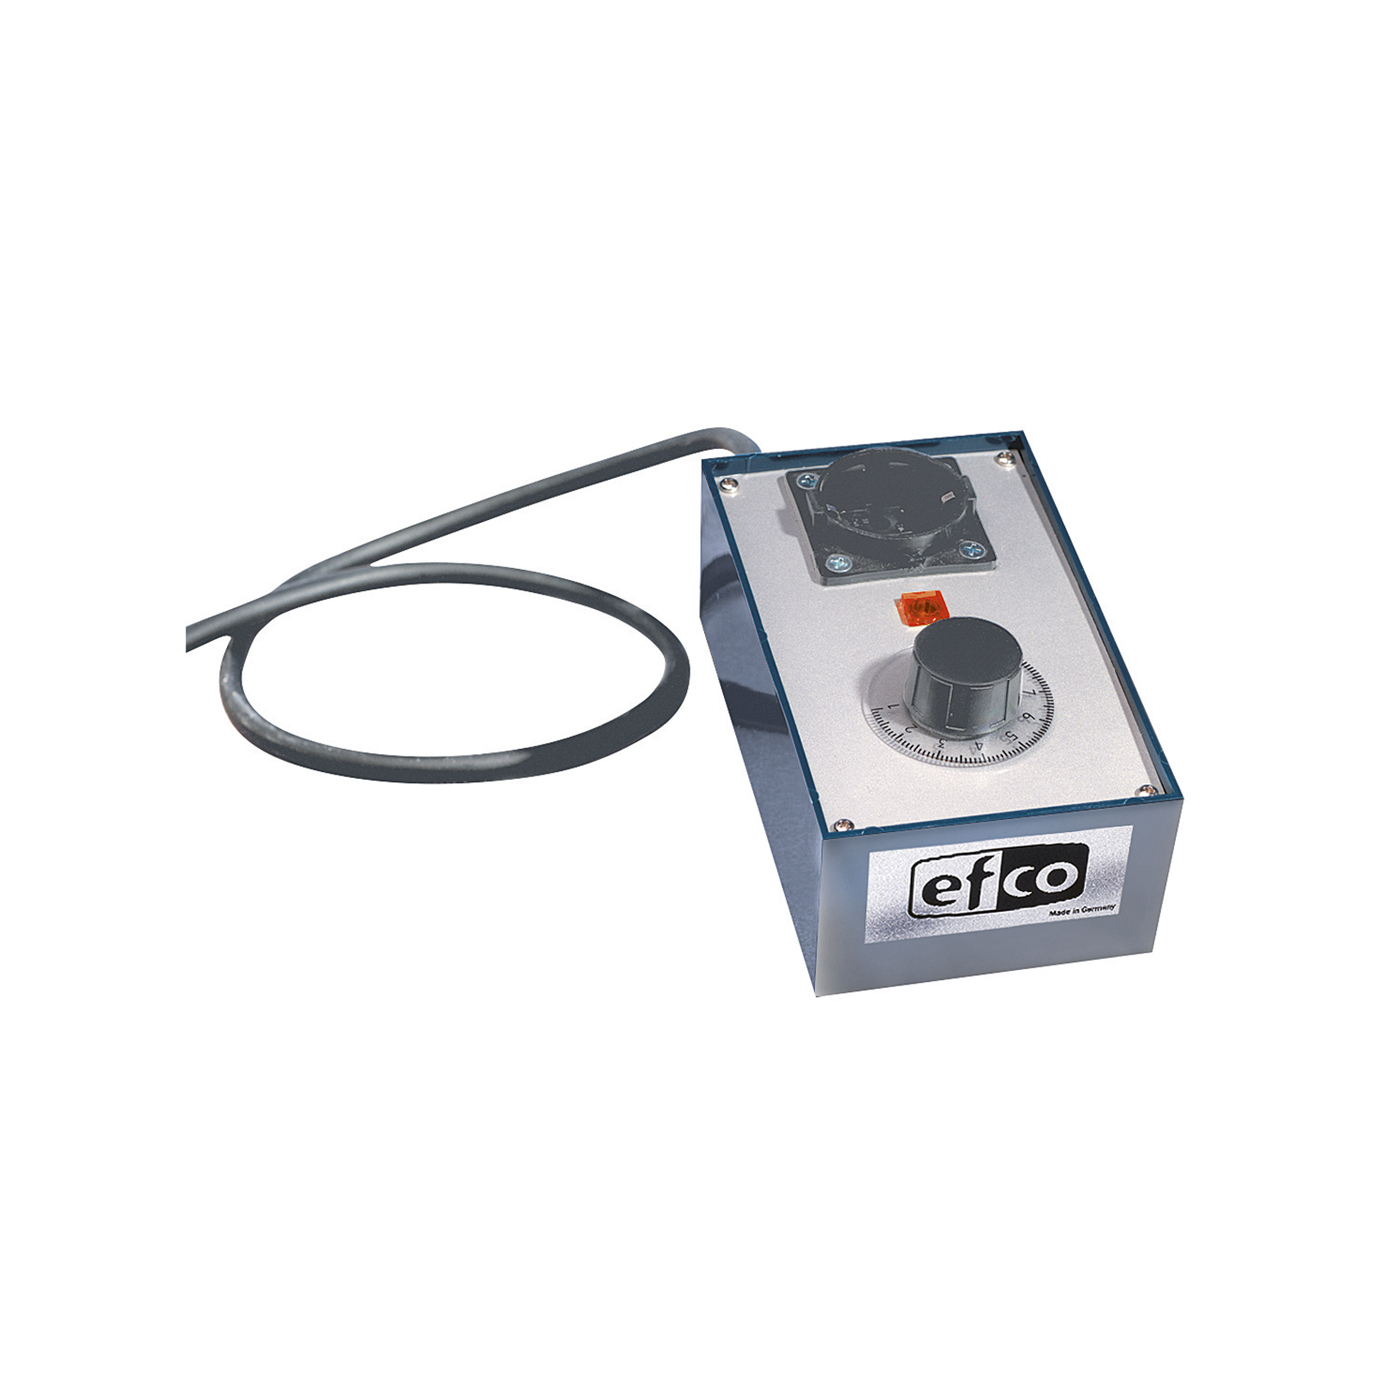 Temperatur Regelgerät, analog für Efco Brenngeräte - 1 Stück